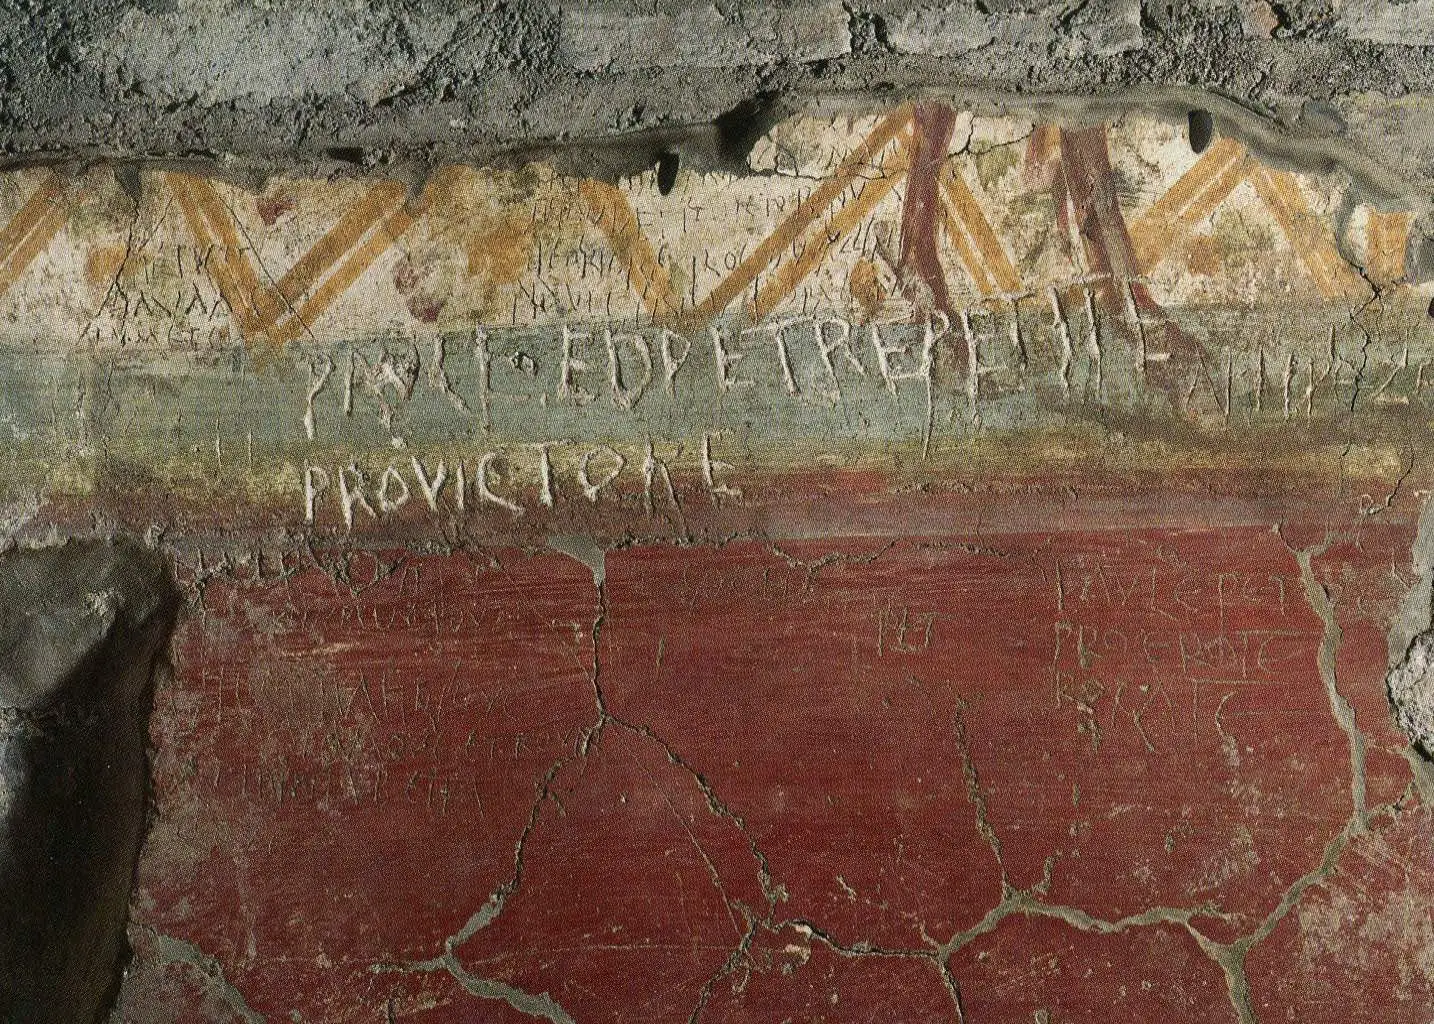 Graffiti from the memoria apostolorum under San Sebastiano on the via Appia. In the public domain: https://blogcamminarenellastoria.files.wordpress.com/2016/03/invocazione-ai-santi-pietro-e-paolo.jpg